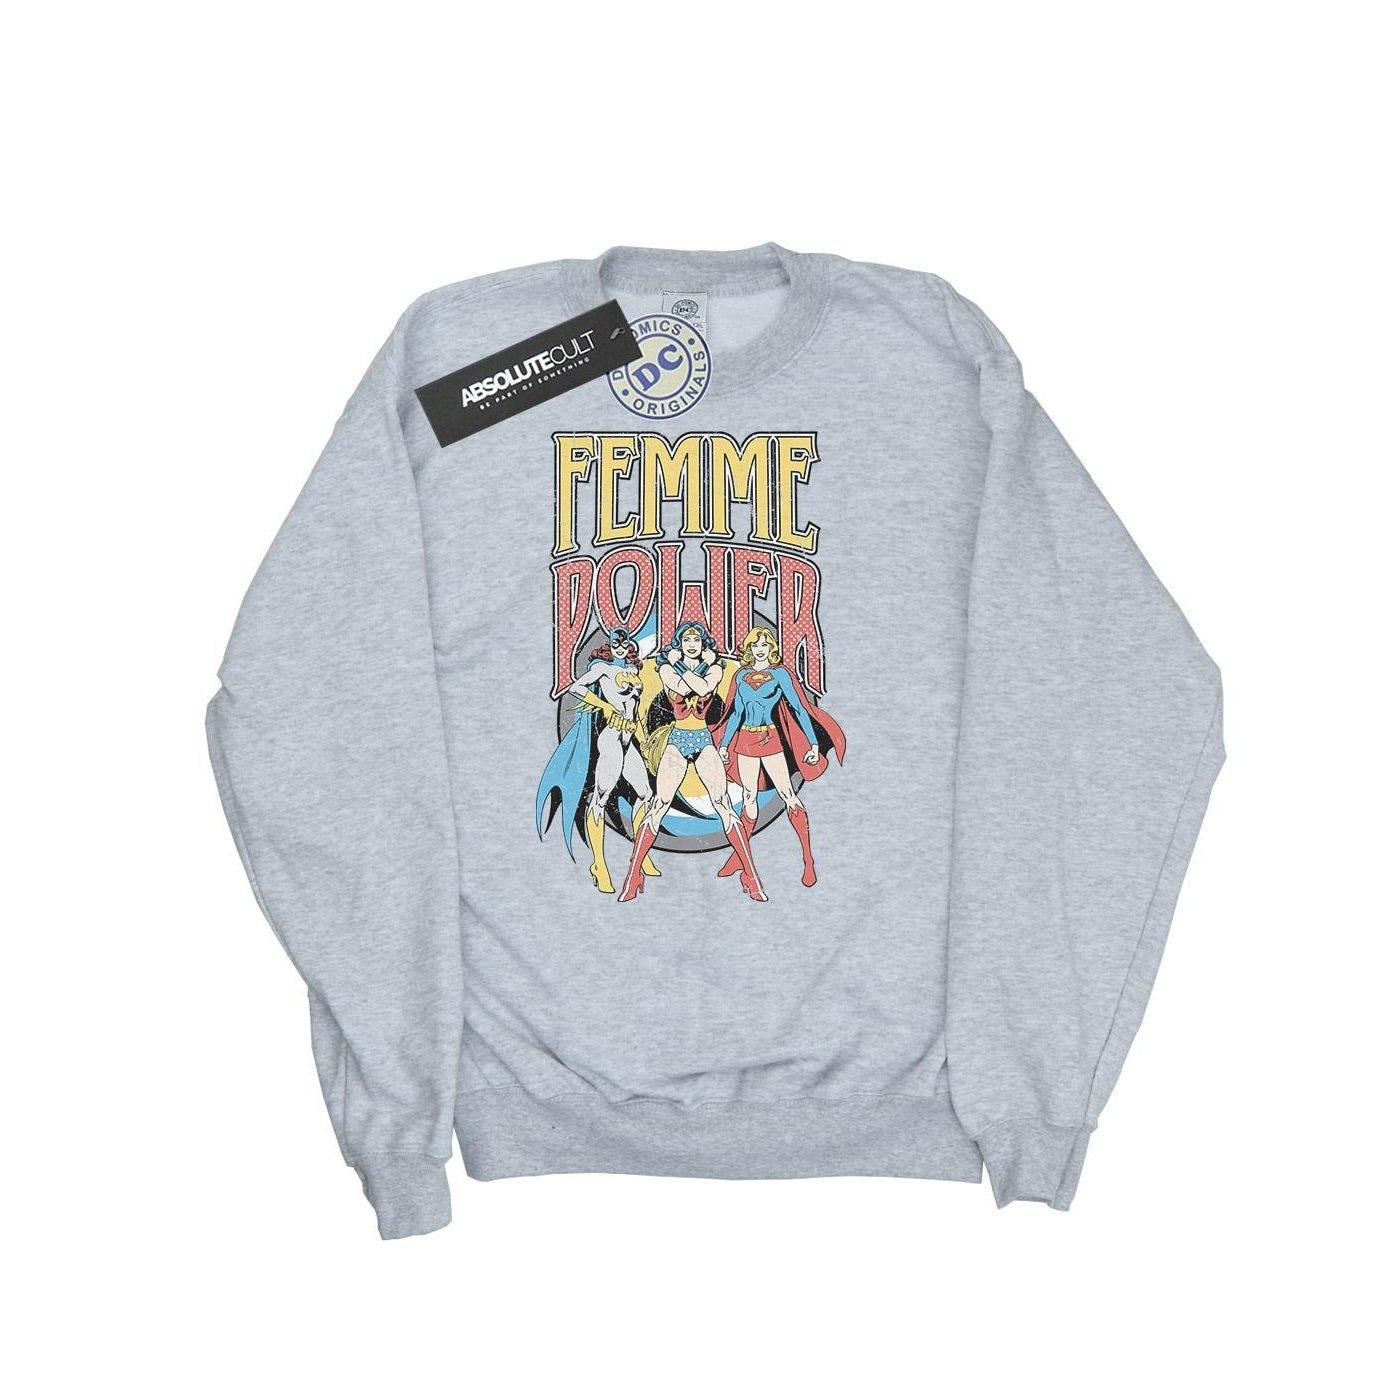 Femme Power Sweatshirt Damen Grau S von DC COMICS